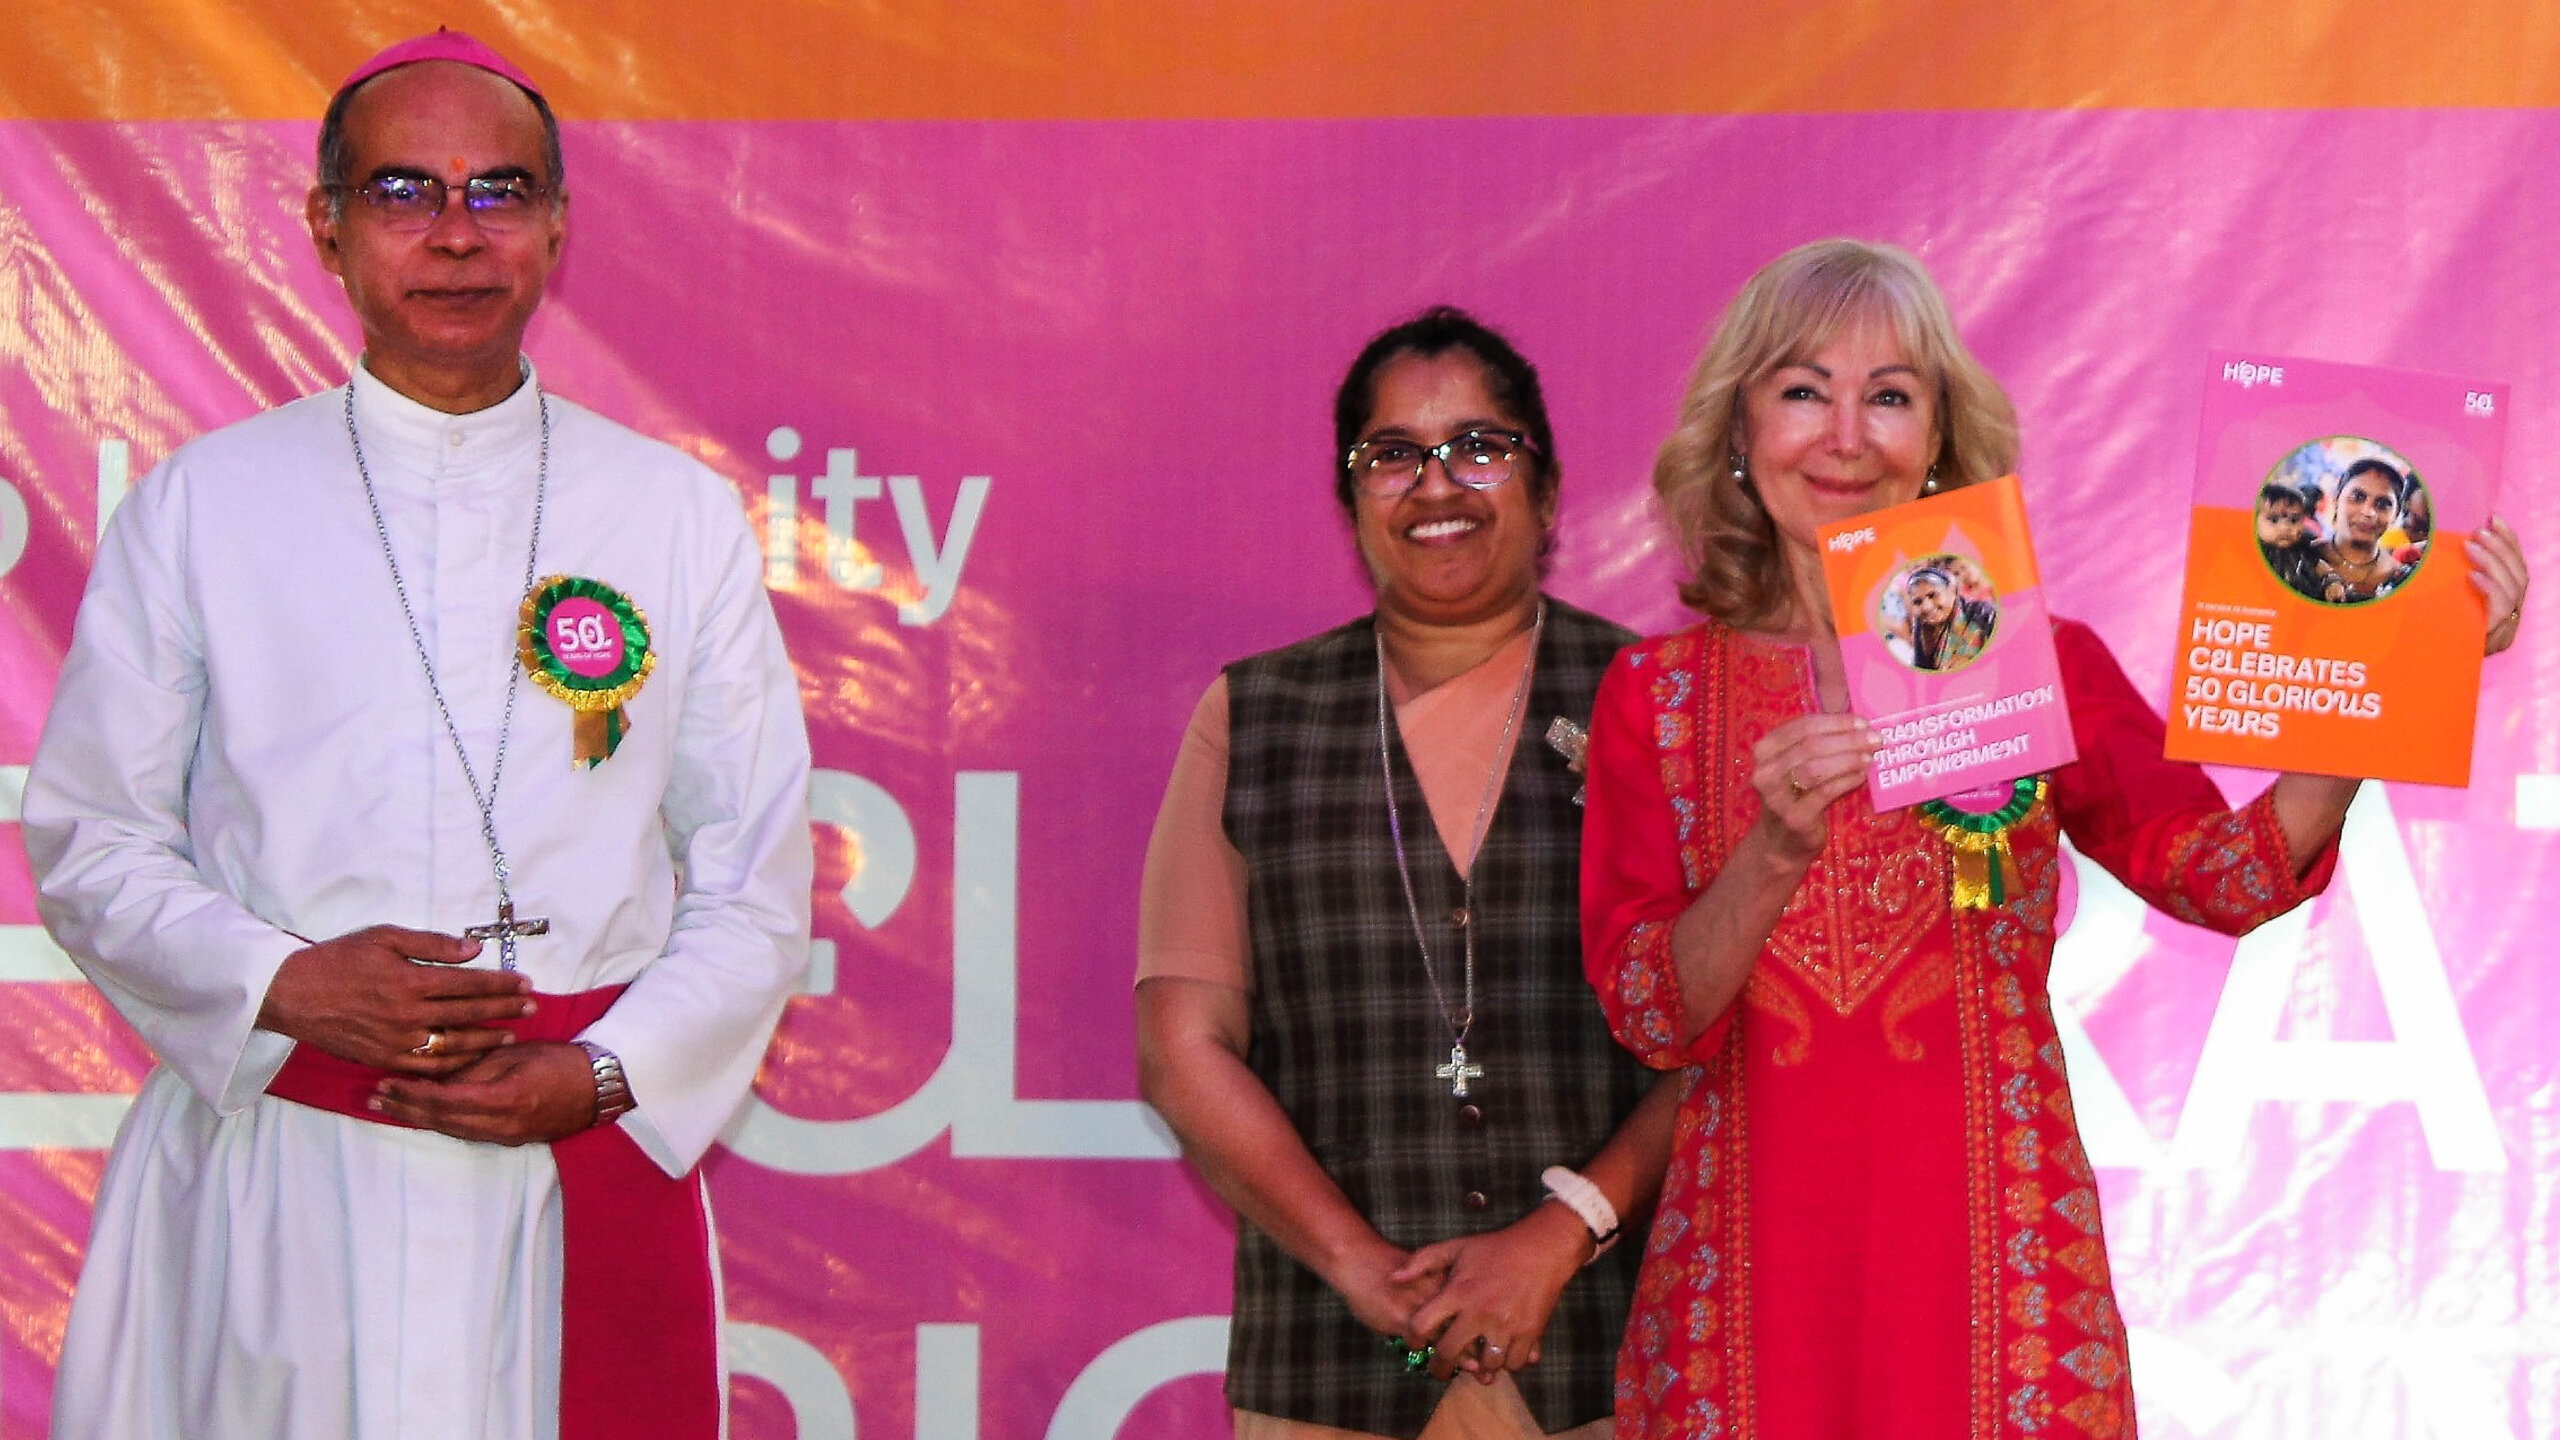 Gruppenfoto von dem Bischof von Pune und zwei Ehrenamtlichen Frauen von HOPE. Die eine hält zwei Broschüren für den Markenrelaunch von HOPE, Human Organisation for Pioneering in Education in die Kamera.